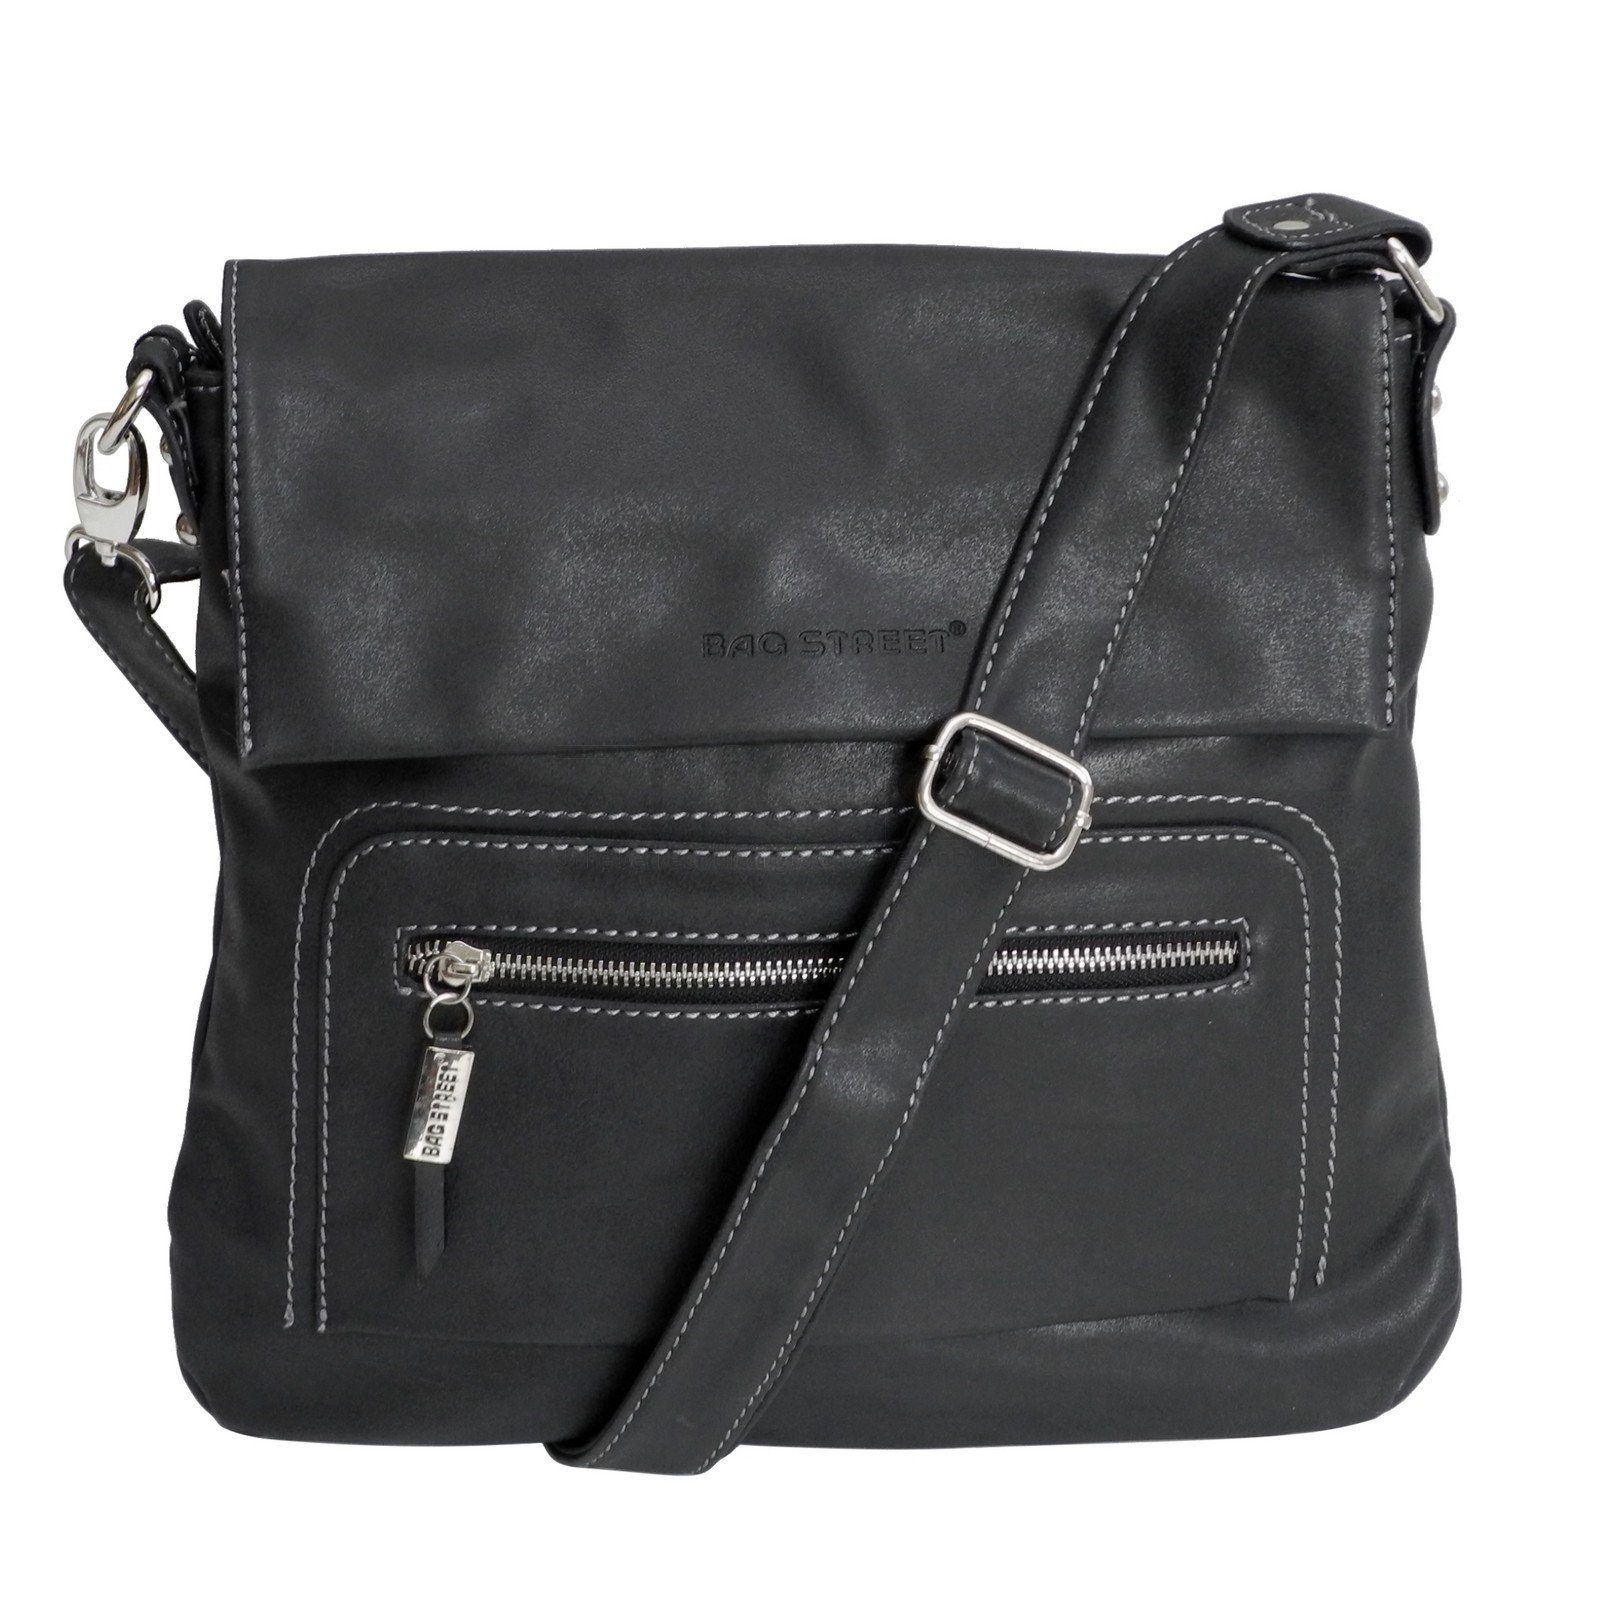 BAG STREET Handtasche Bag Street - Damen Messengerbag Damentasche Umhängetasche Auswahl Schwarz